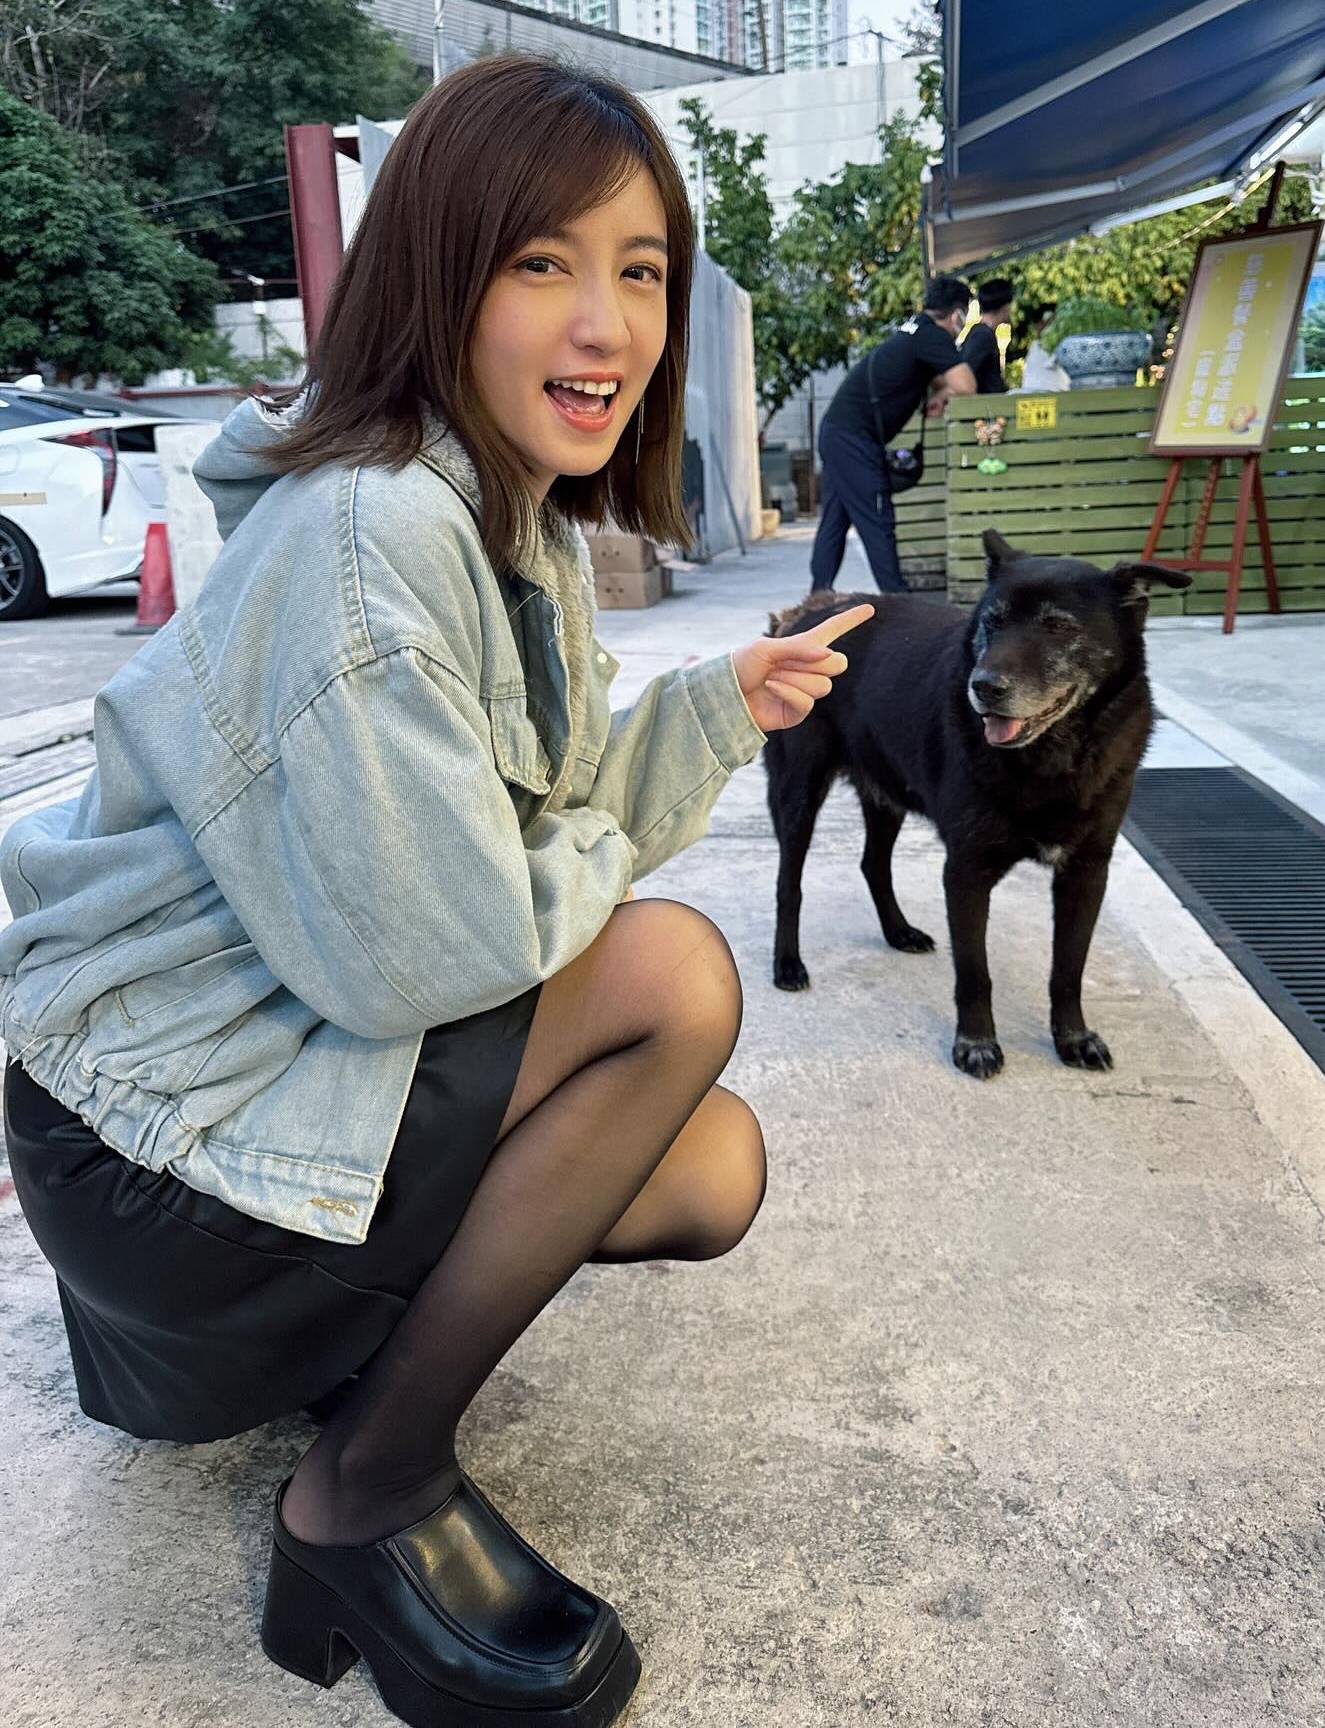 陈嘉倩 新闻主播 陈嘉倩 陈嘉倩早前又曾踎低同街上偶遇的狗狗合照。